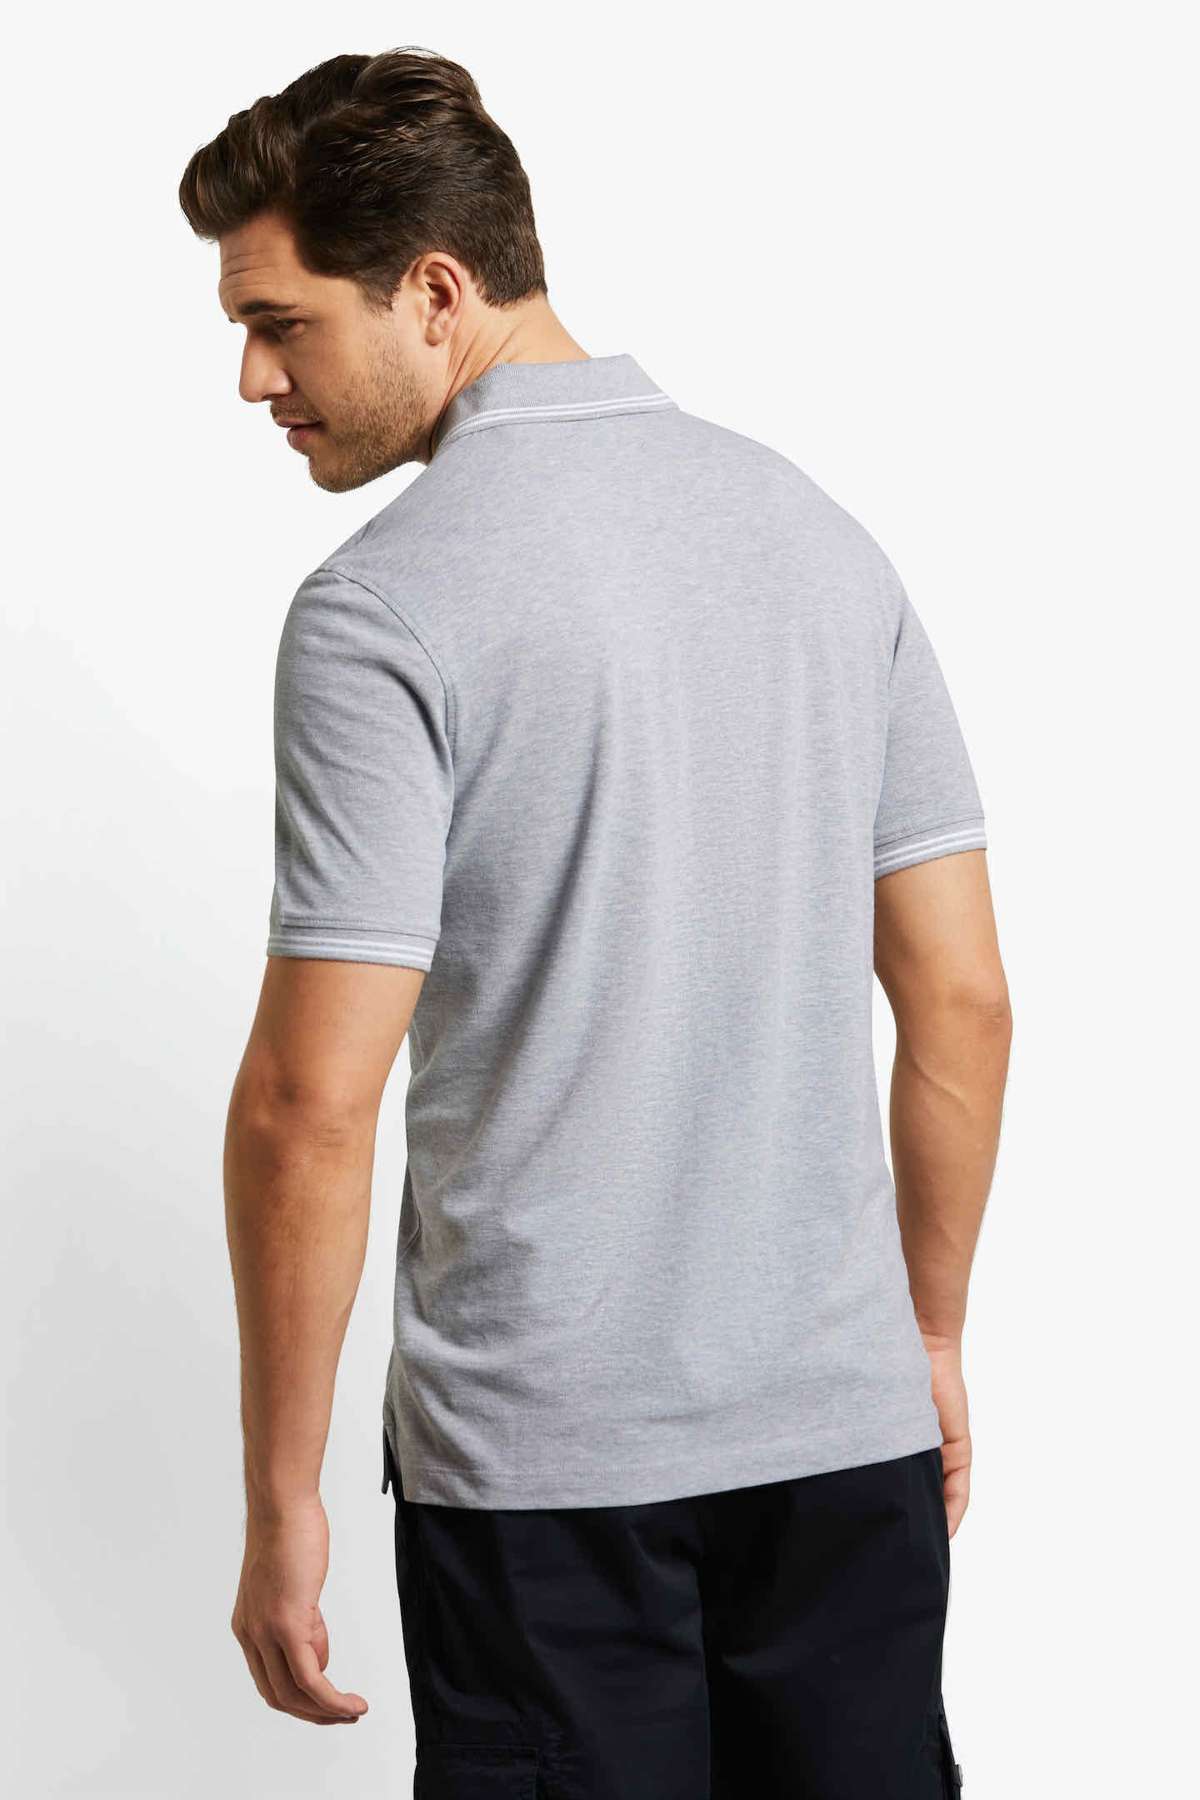 Рубашка-поло со спортивными контрастными полосками